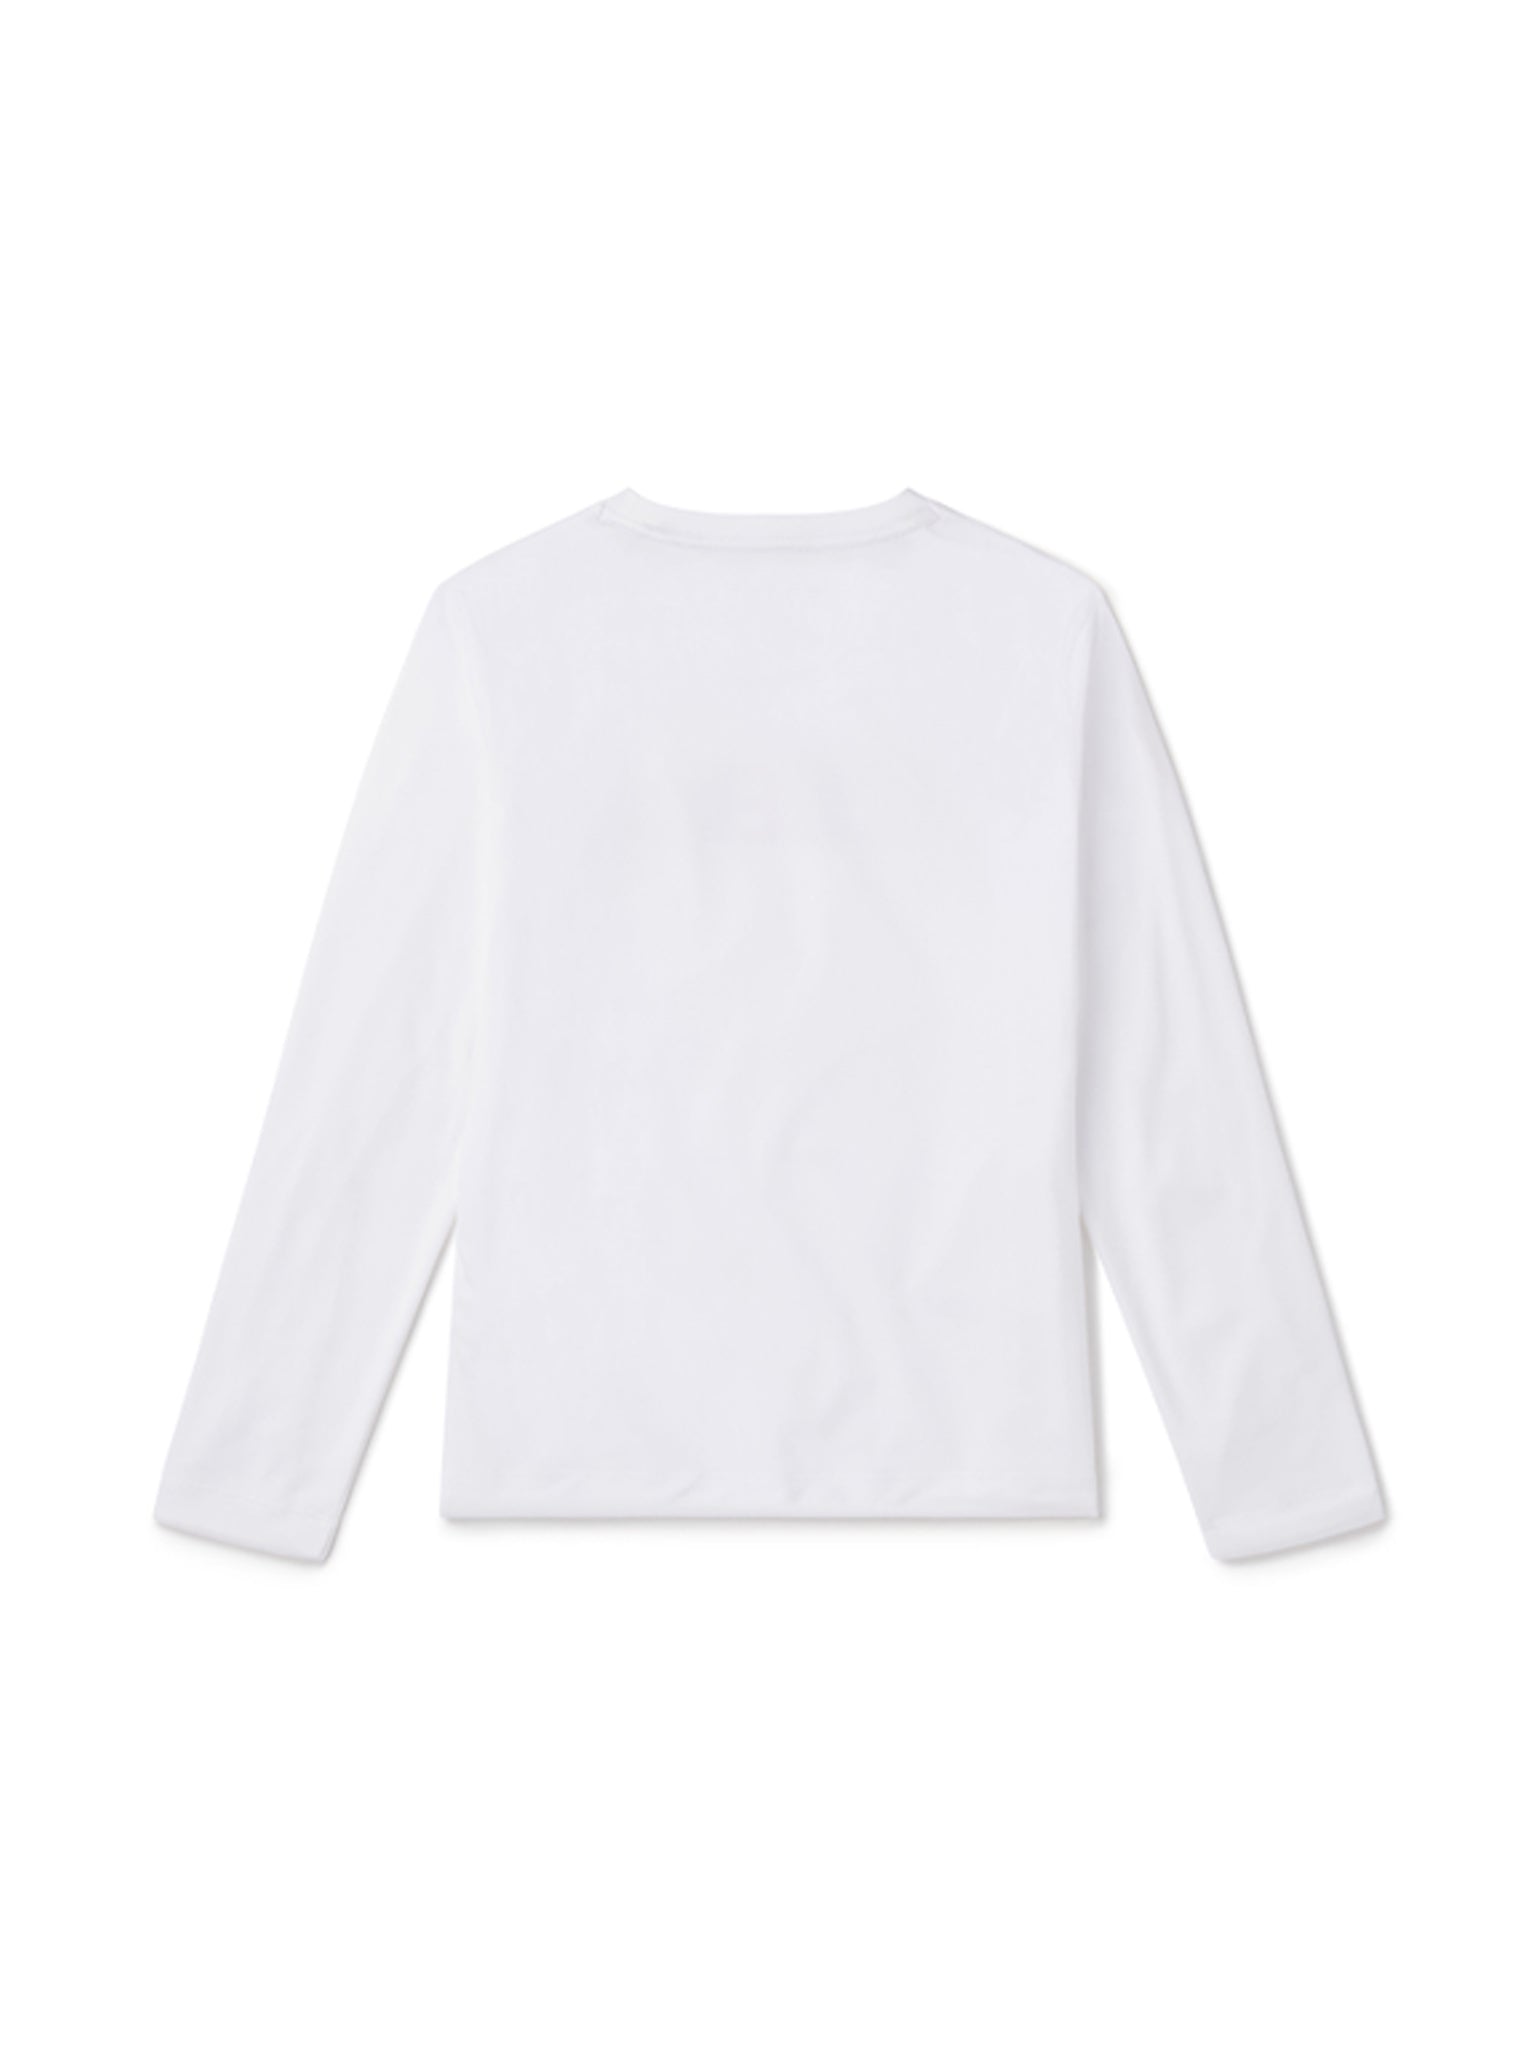 Long Sleeve Swim T-Shirt - Graphic White